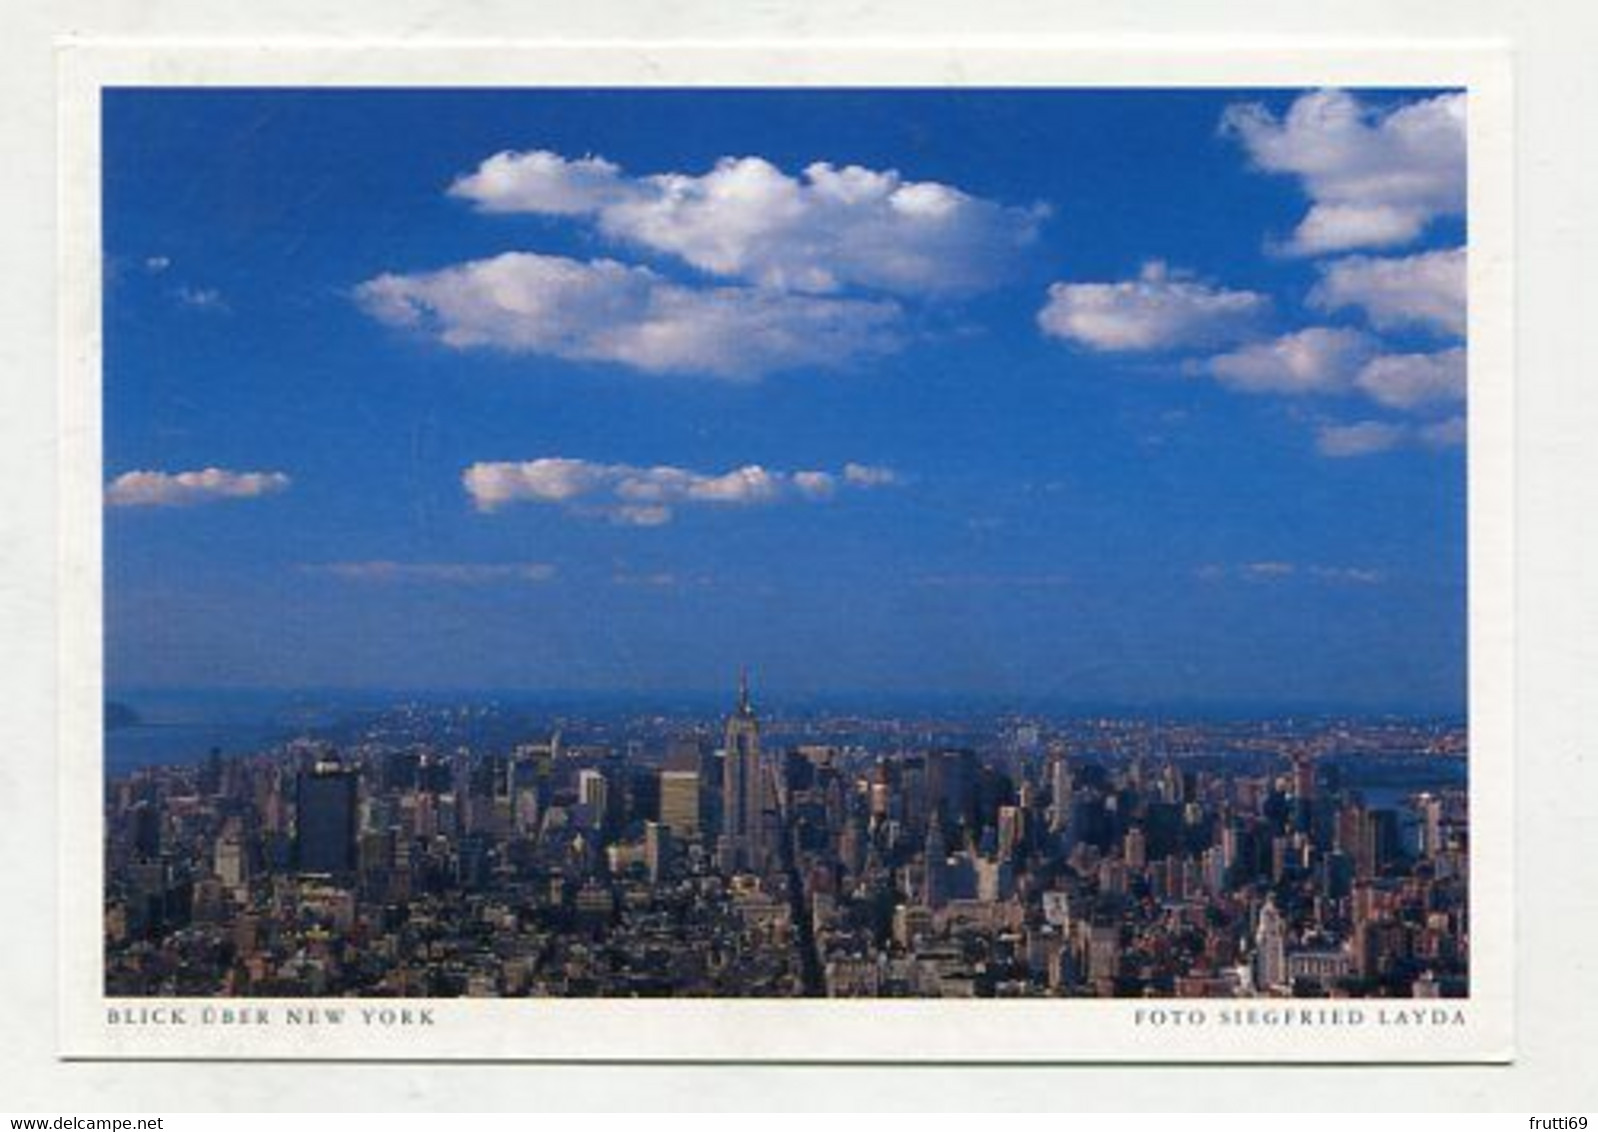 AK 080468 USA - New York City - Blick über New York - Mehransichten, Panoramakarten